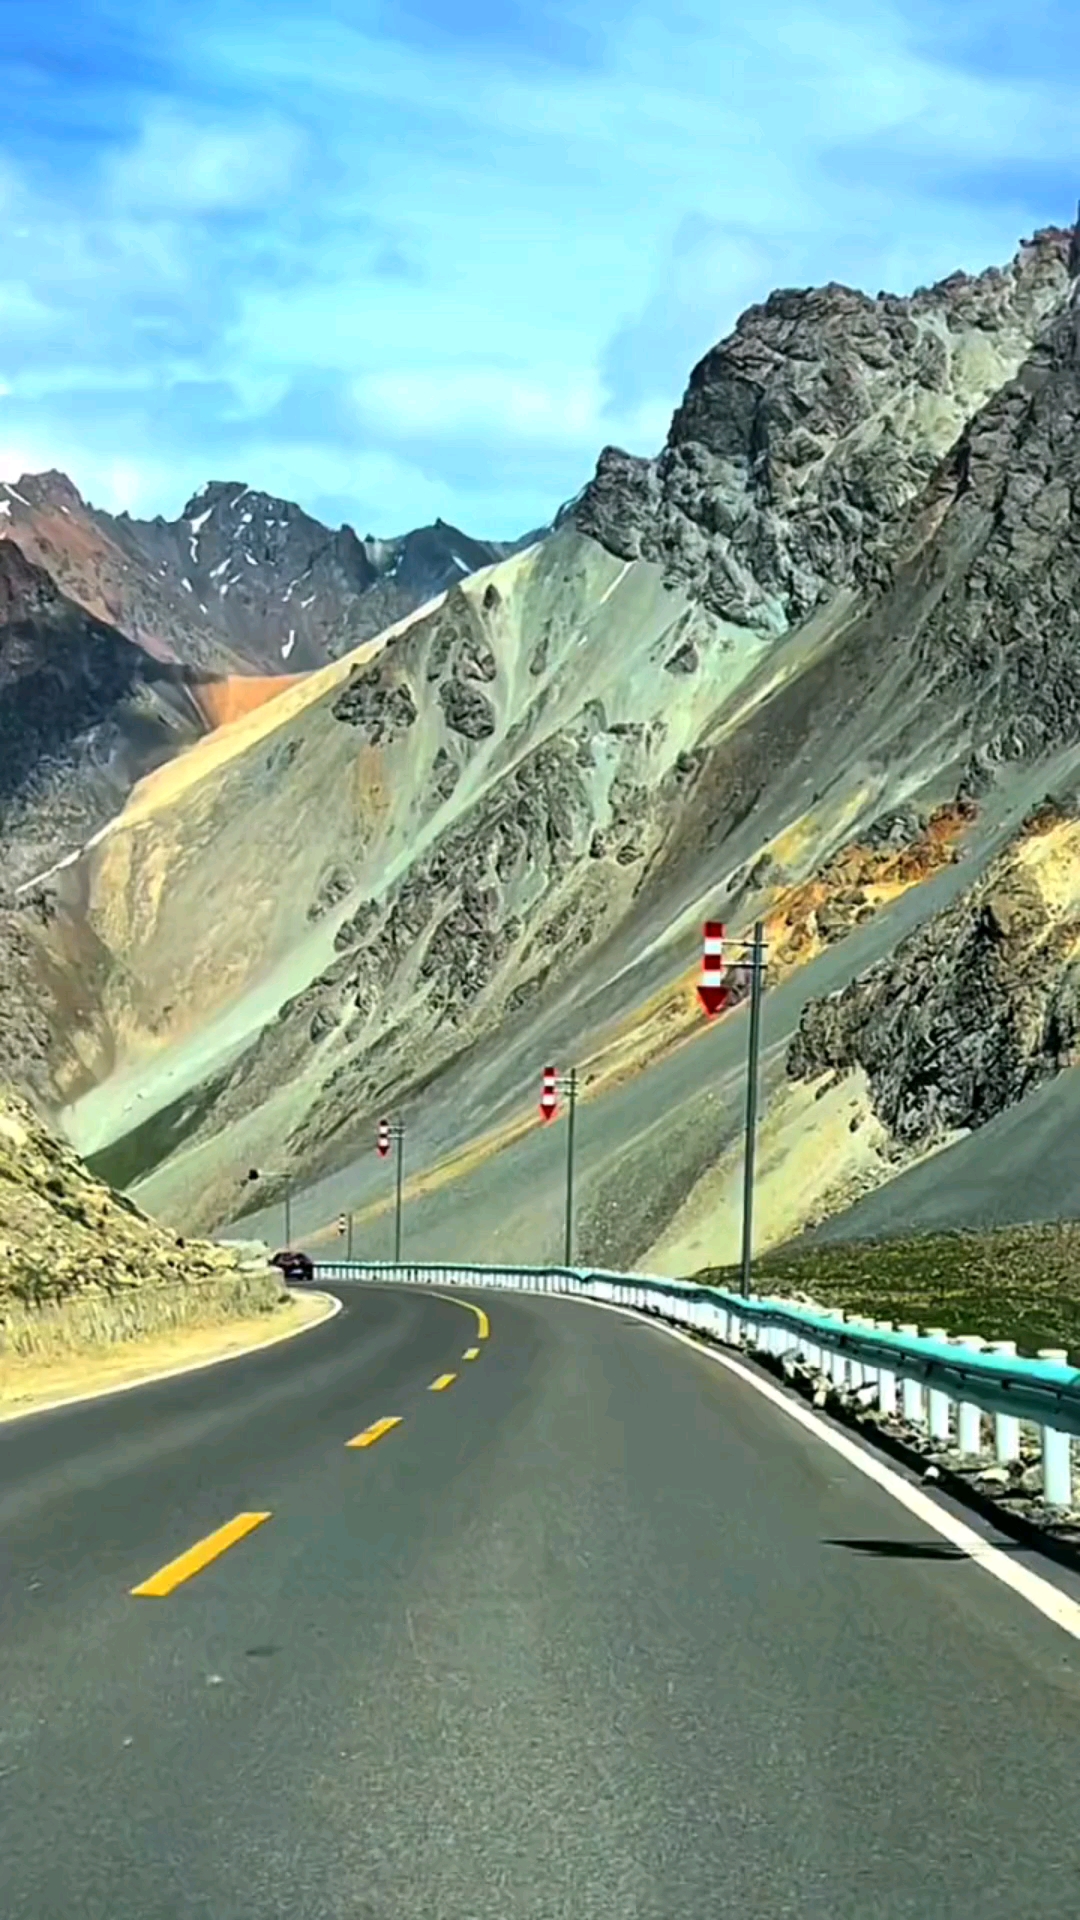 伊犁:独库公路,最美的风景在路上